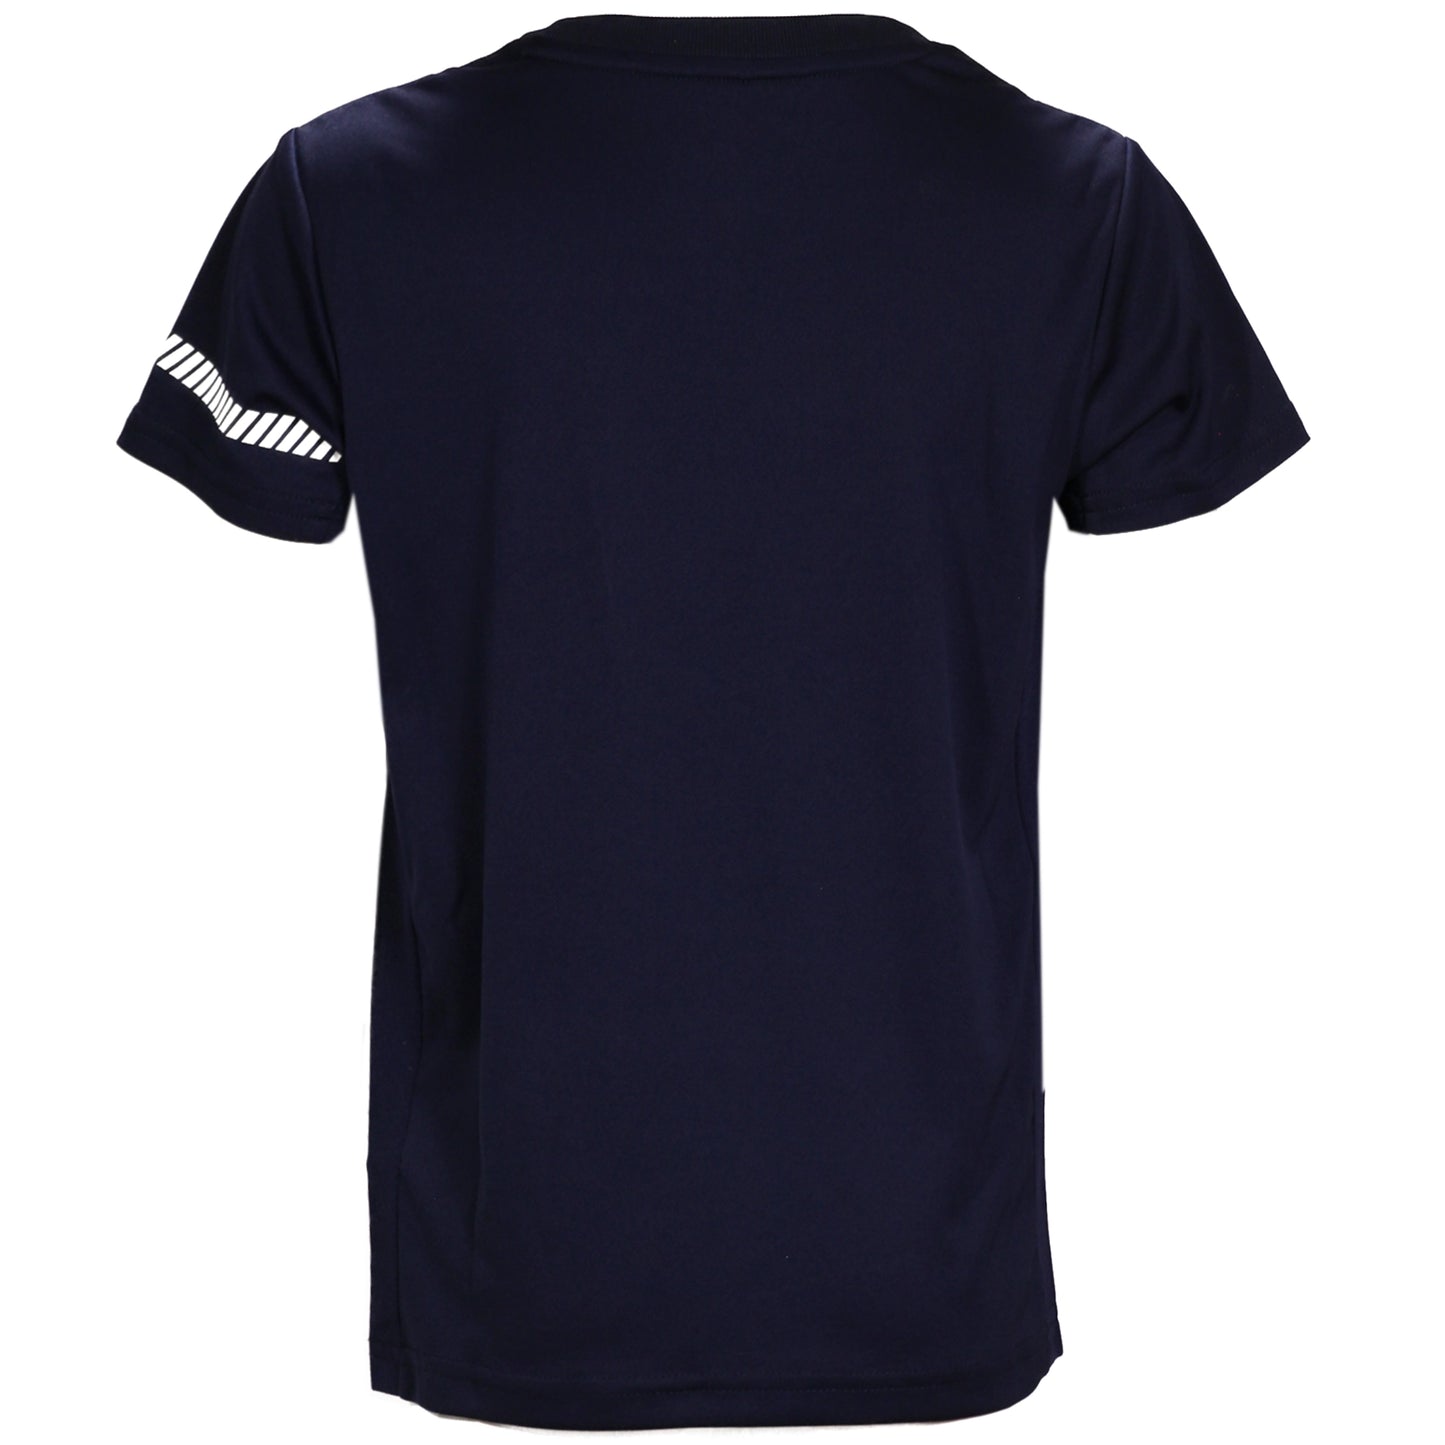 Asics Boy's SS T-Shirt 2044A029-400